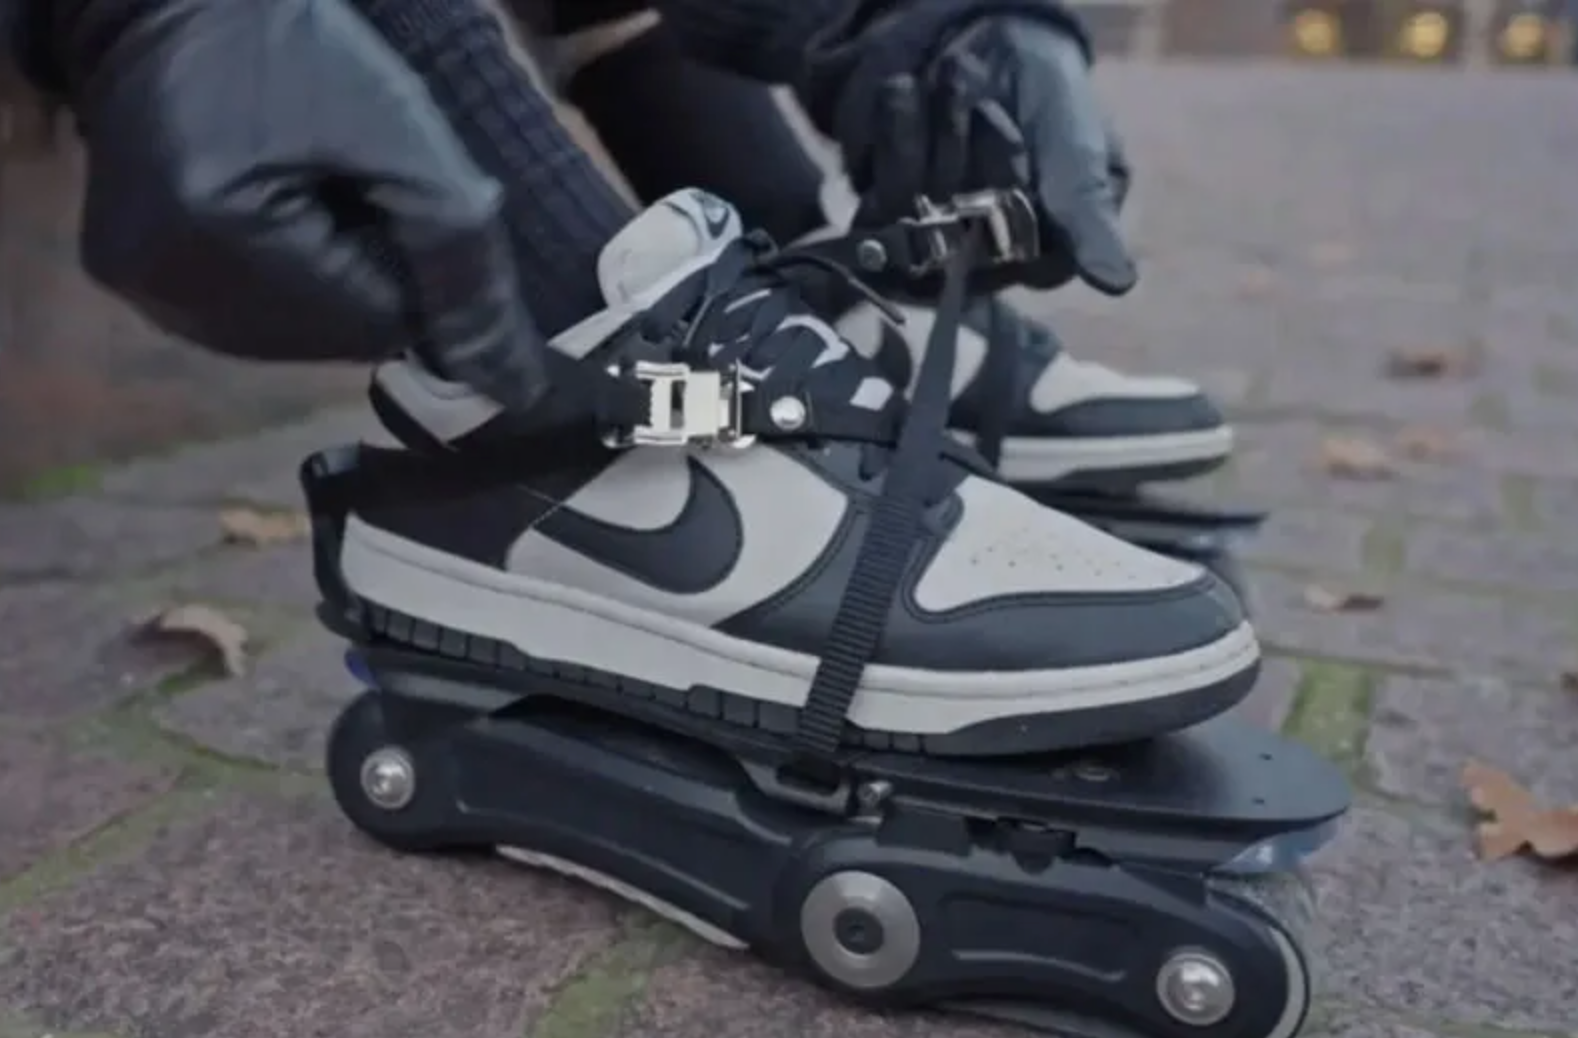 Moonwalkers Electric Skates Shoes